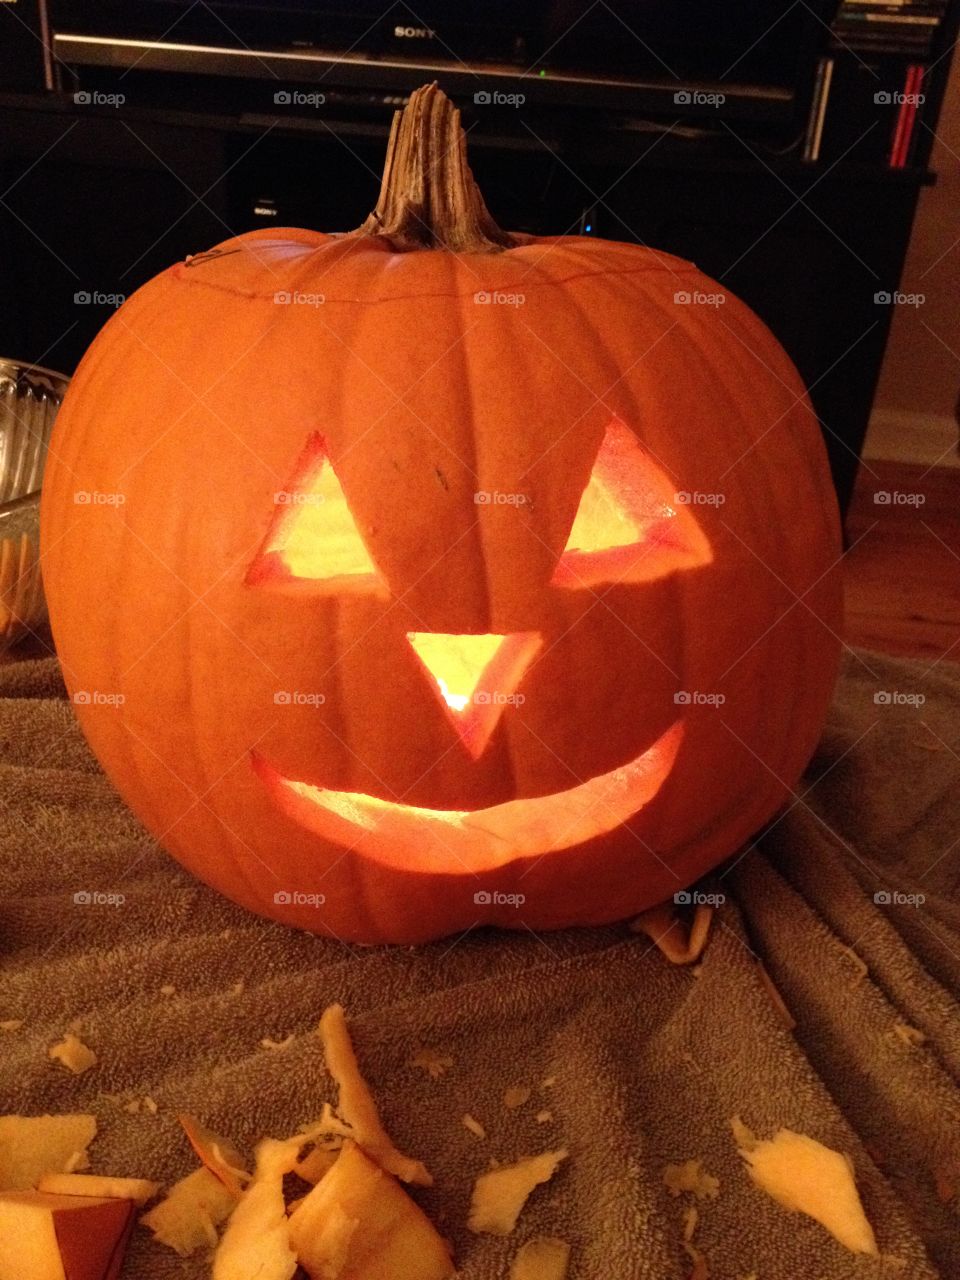 Carved pumpkin in October